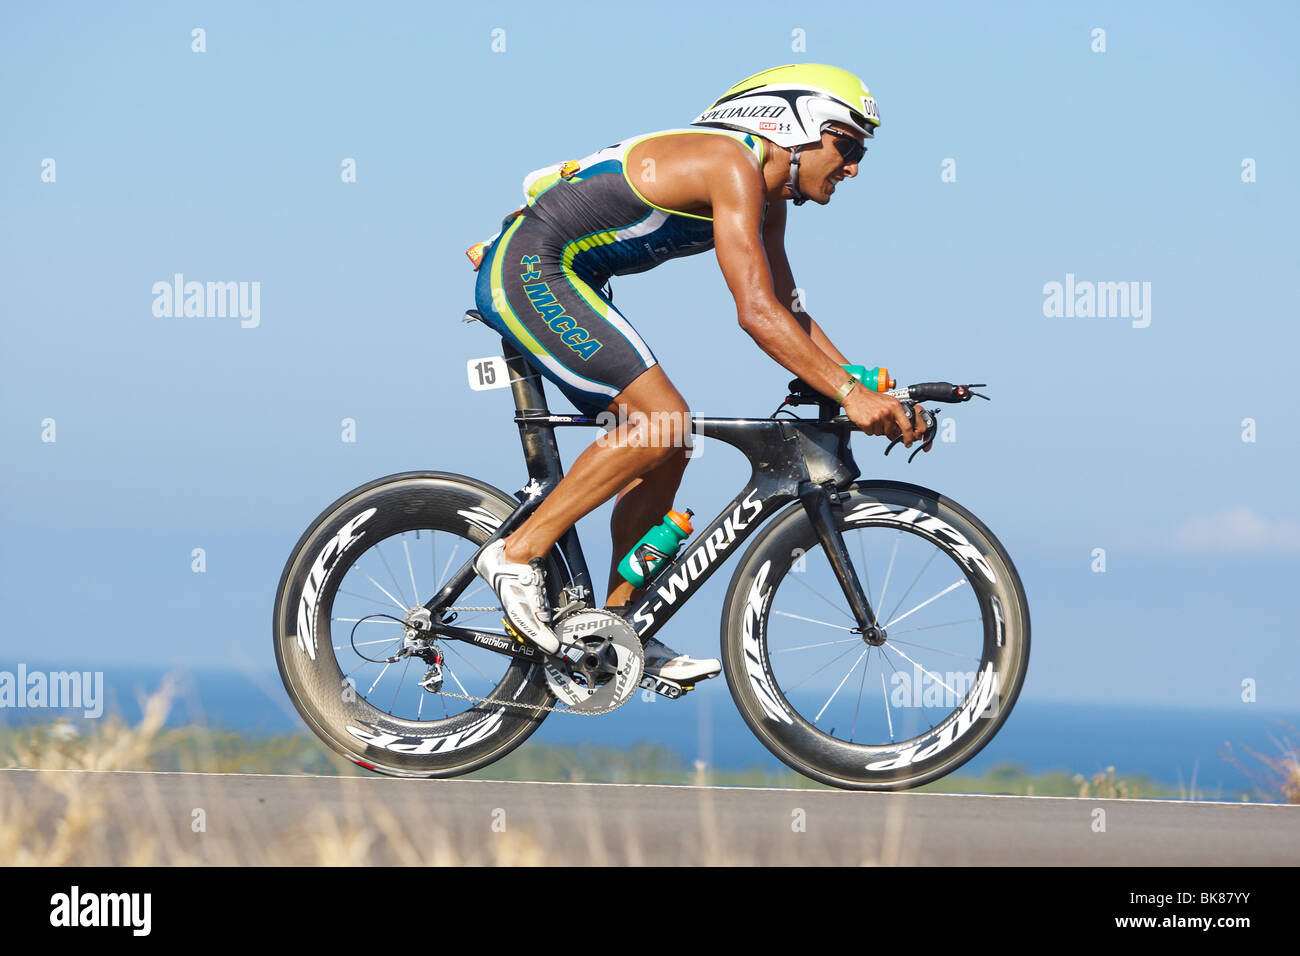 Der australische Profi-Triathlet Chris Mc Cormack auf der Radstrecke des Ironman Triathlon World Championship in Kona, Haw Stockfoto